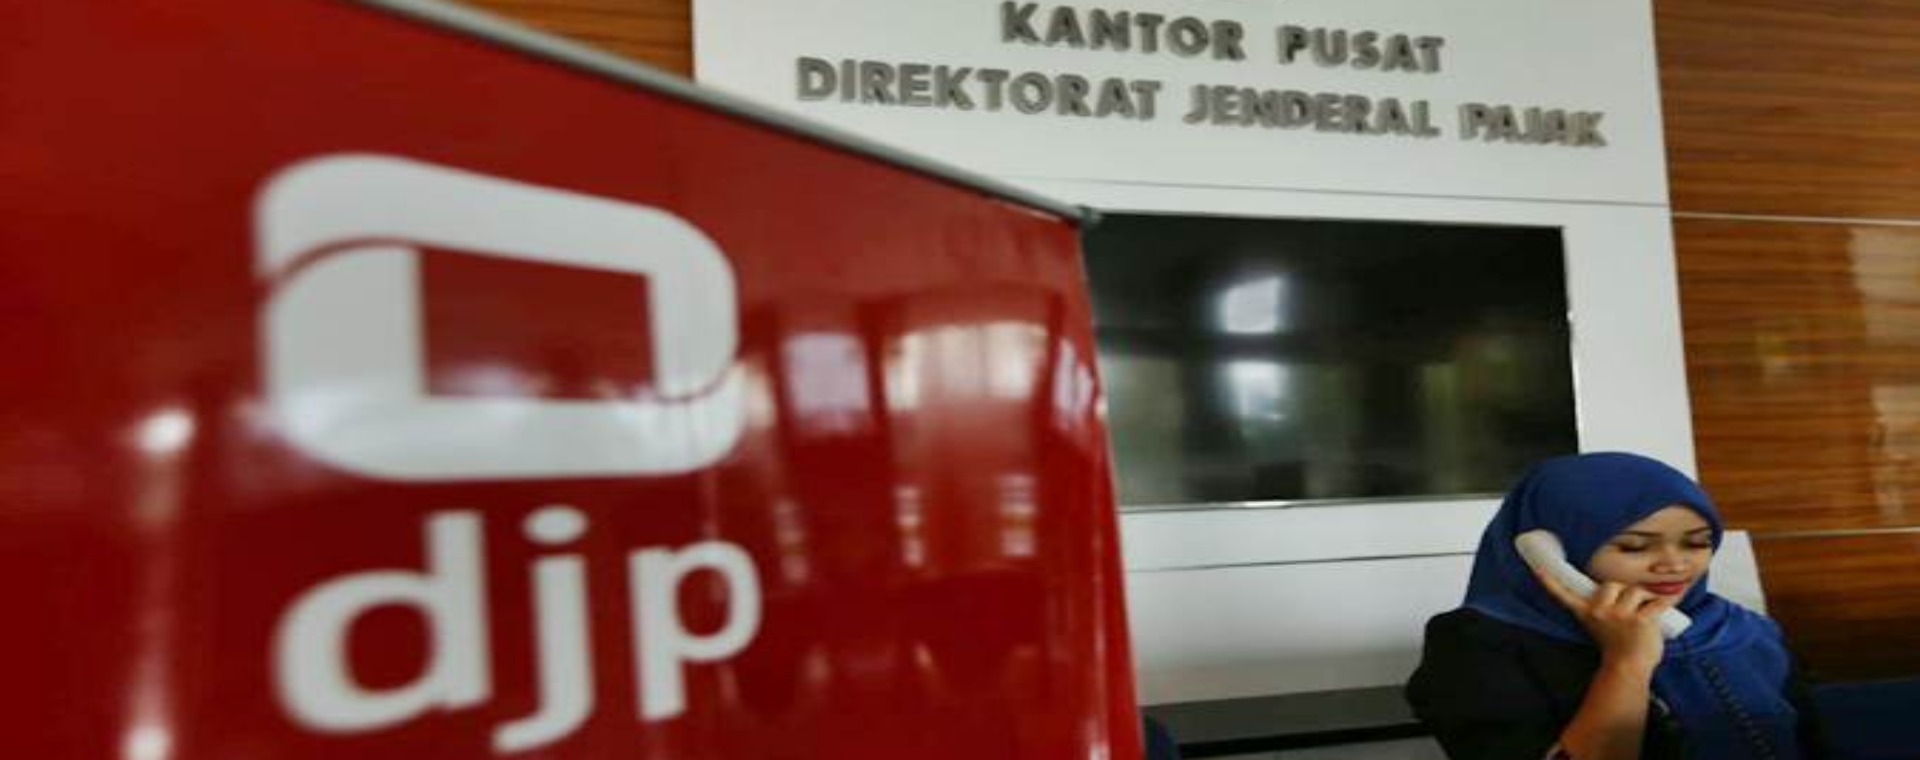 Karyawan berkomunikasi di kantor pusat Direktorat Jenderal Pajak di Jakarta, Senin (10/6/2019). - Bisnis/Nurul Hidayat